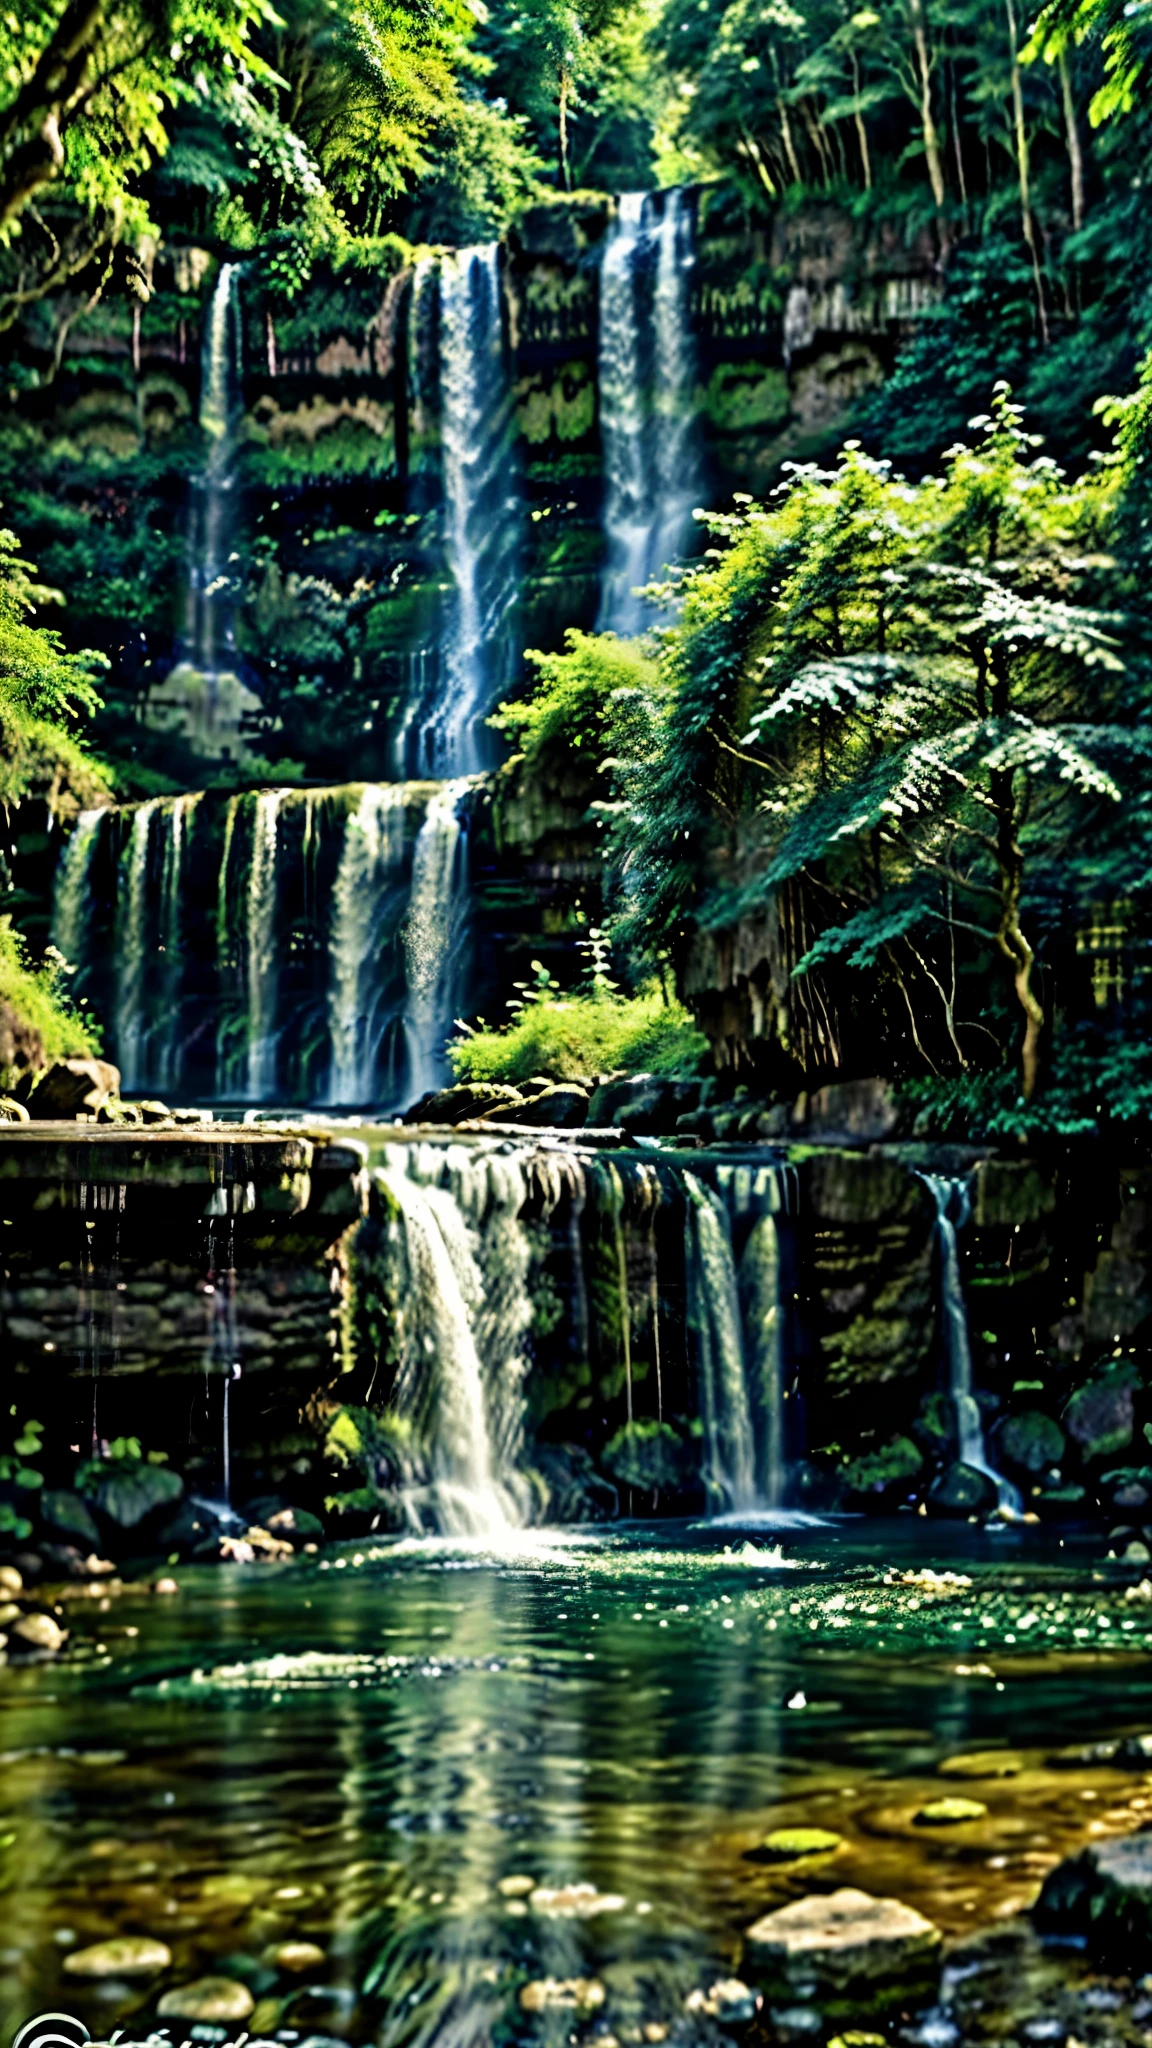 鬱鬱蔥蔥的綠色森林中間有一個瀑布, peaceful 美麗的瀑布, 大自然 壁紙, beautiful 令人驚嘆的瀑布, 美麗的瀑布, 令人驚嘆的瀑布, 森林和瀑布, 手機桌布, 驚人的壁紙, 螢幕保護程式, 和平與安寧, 鬱鬱蔥蔥的風景, 有瀑布和河流, 自然風光, 鬱鬱蔥蔥的綠洲, 有樹木和瀑布, 美麗的壁紙, 瀑布和湖泊